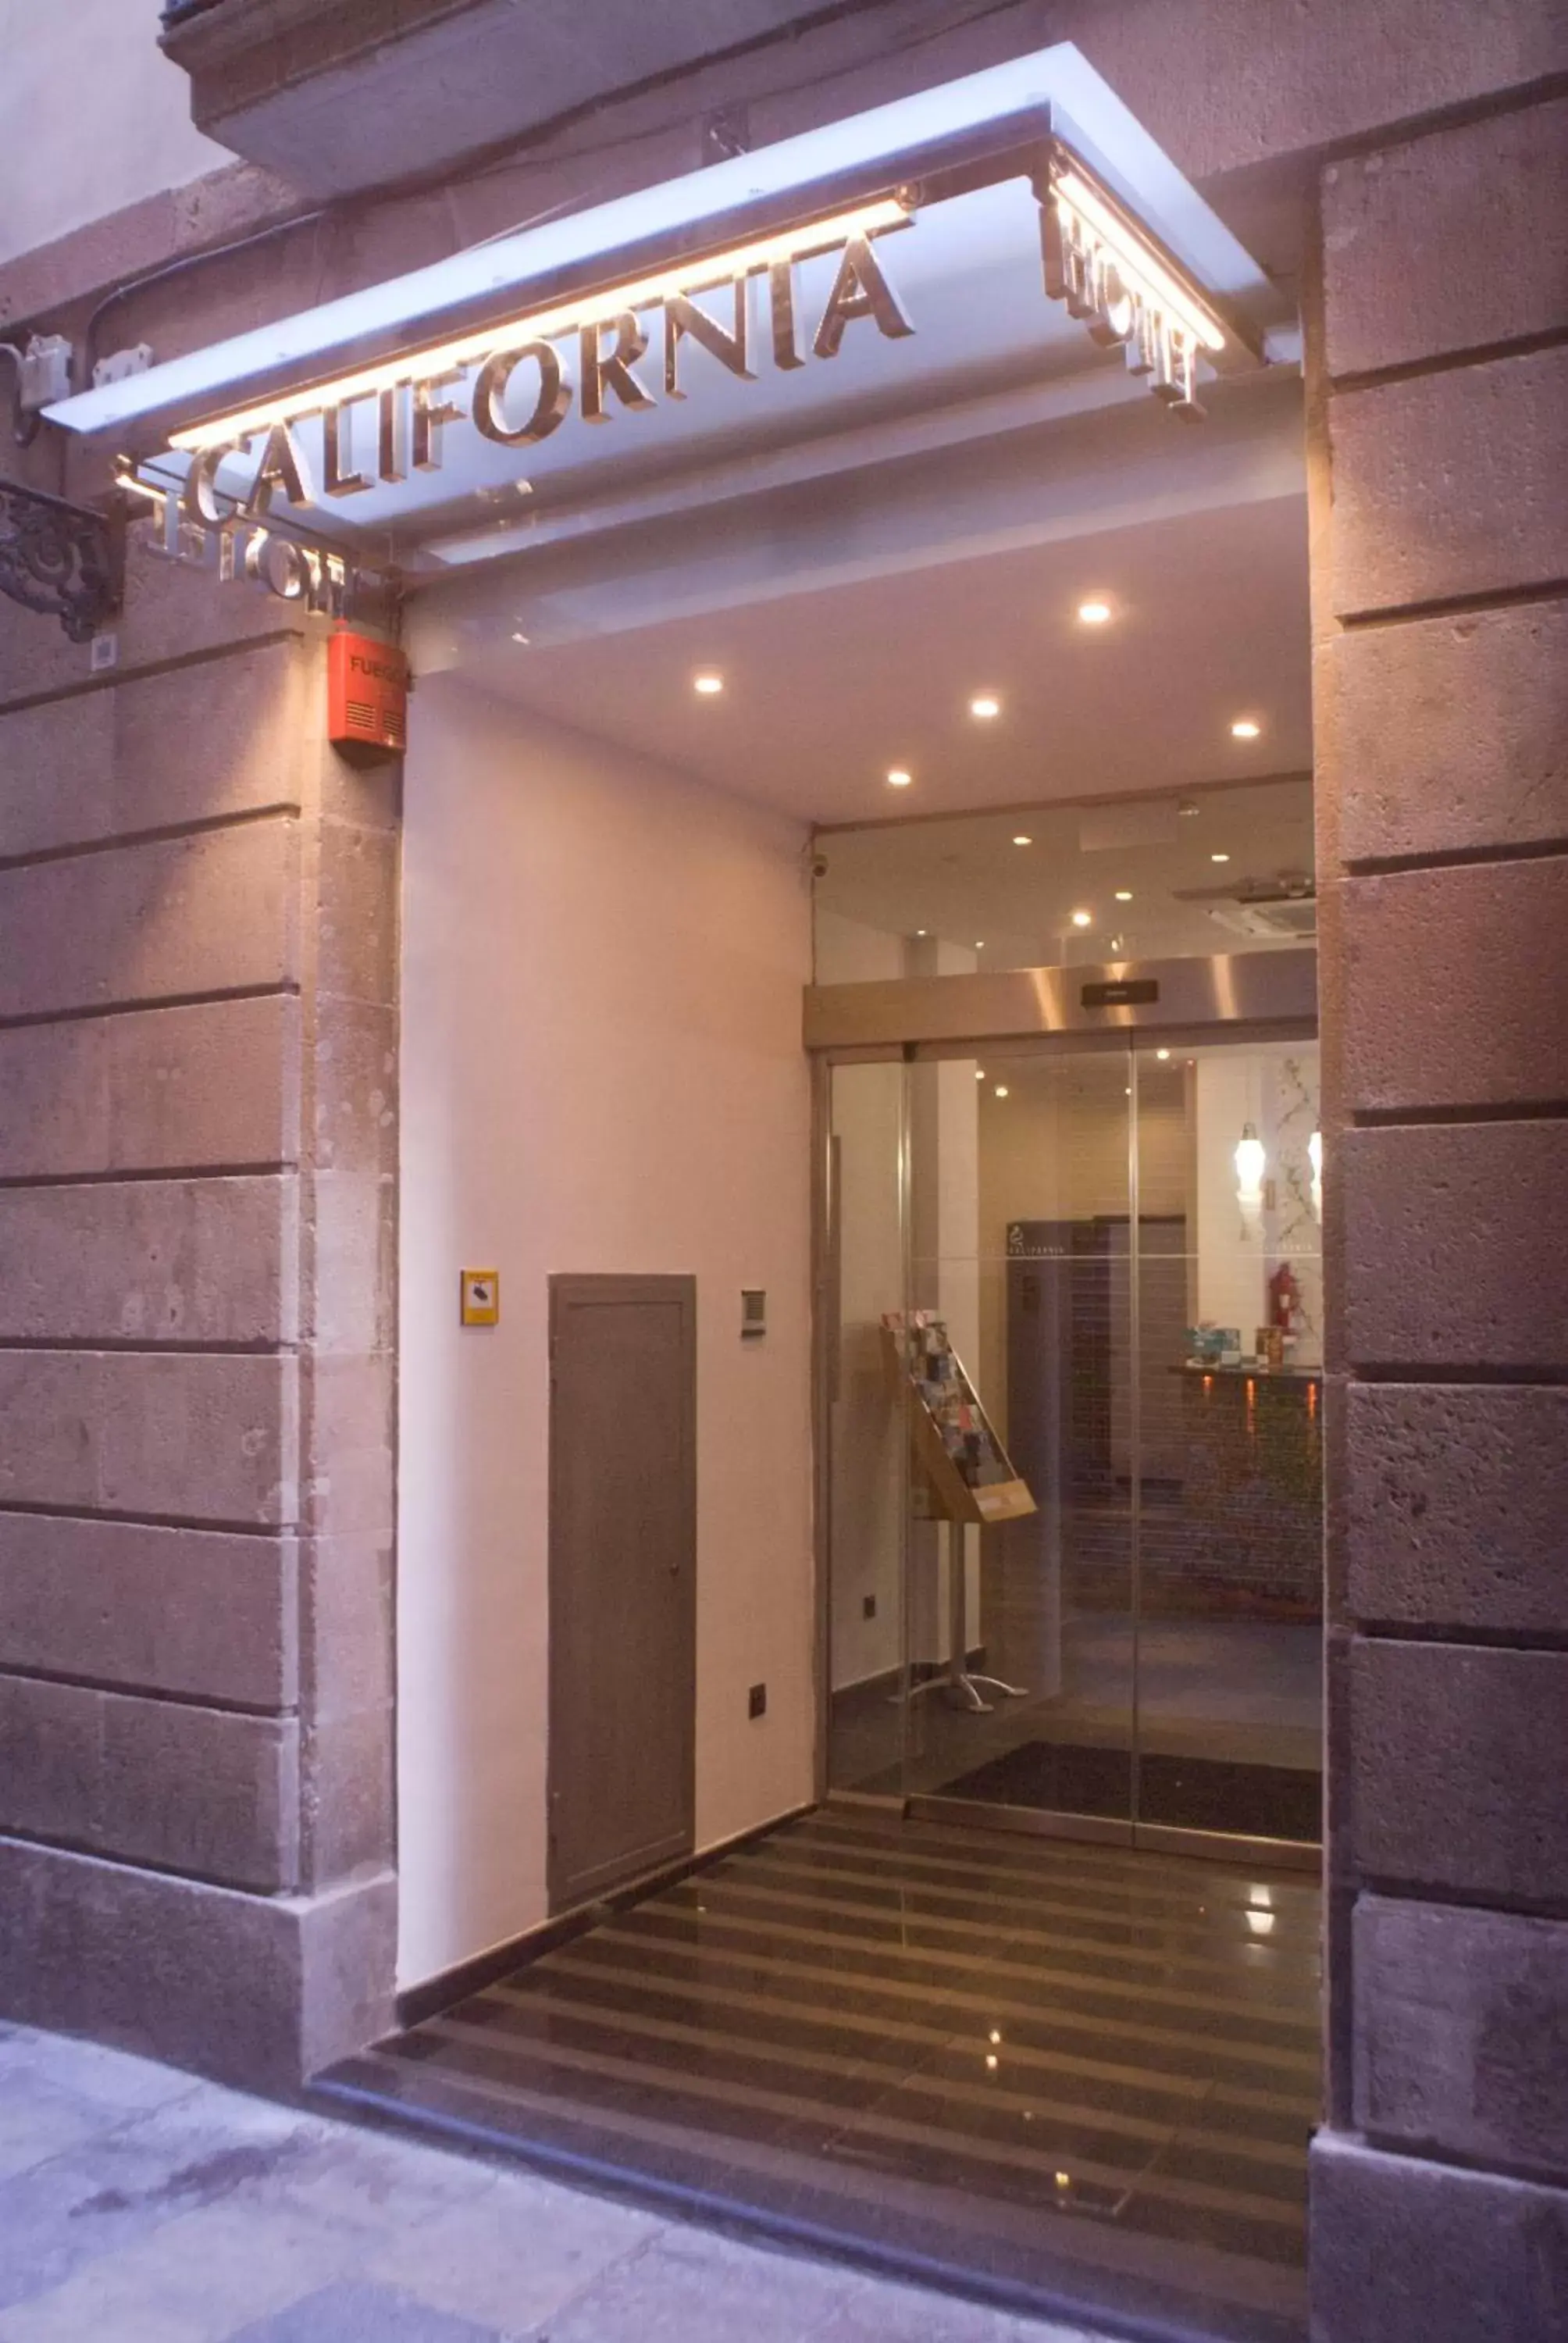 Facade/entrance in Hotel California